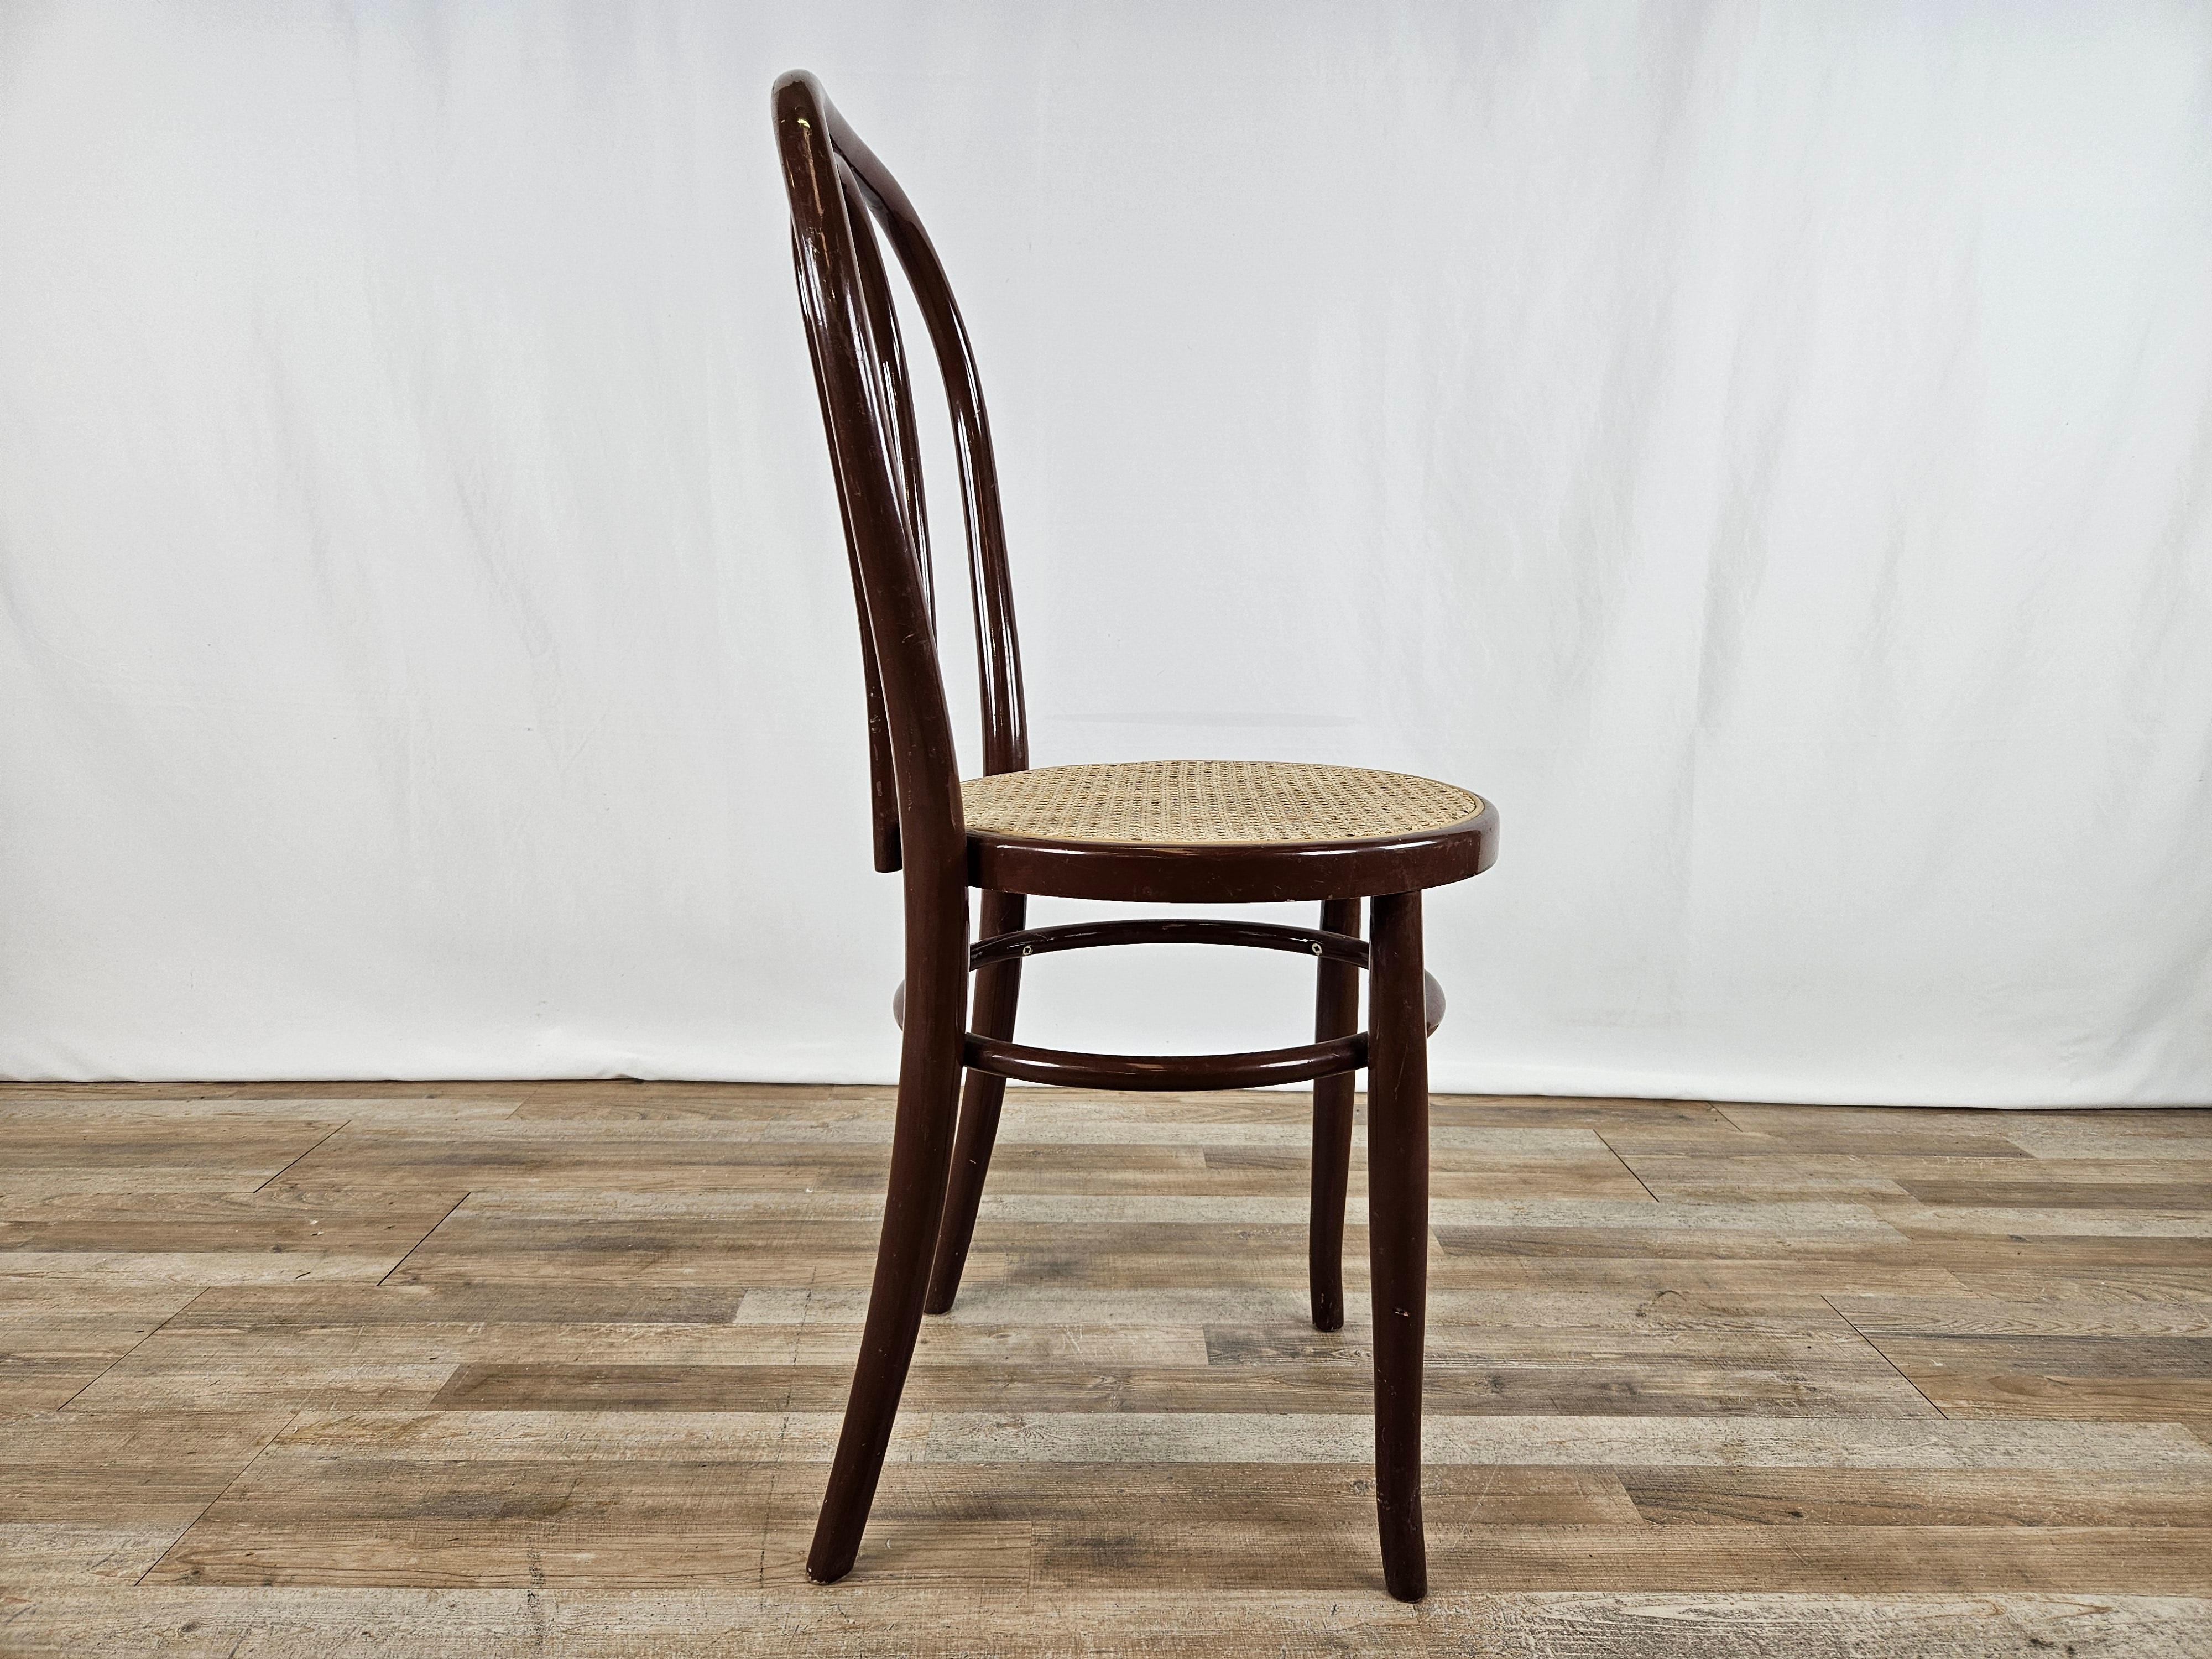 Chaise en bois laqué brun avec assise en paille de Vienne.

Idéal pour les cuisines, les bureaux, les salons ou comme éléments de mobilier.

Signes normaux dus à l'âge et à l'utilisation.